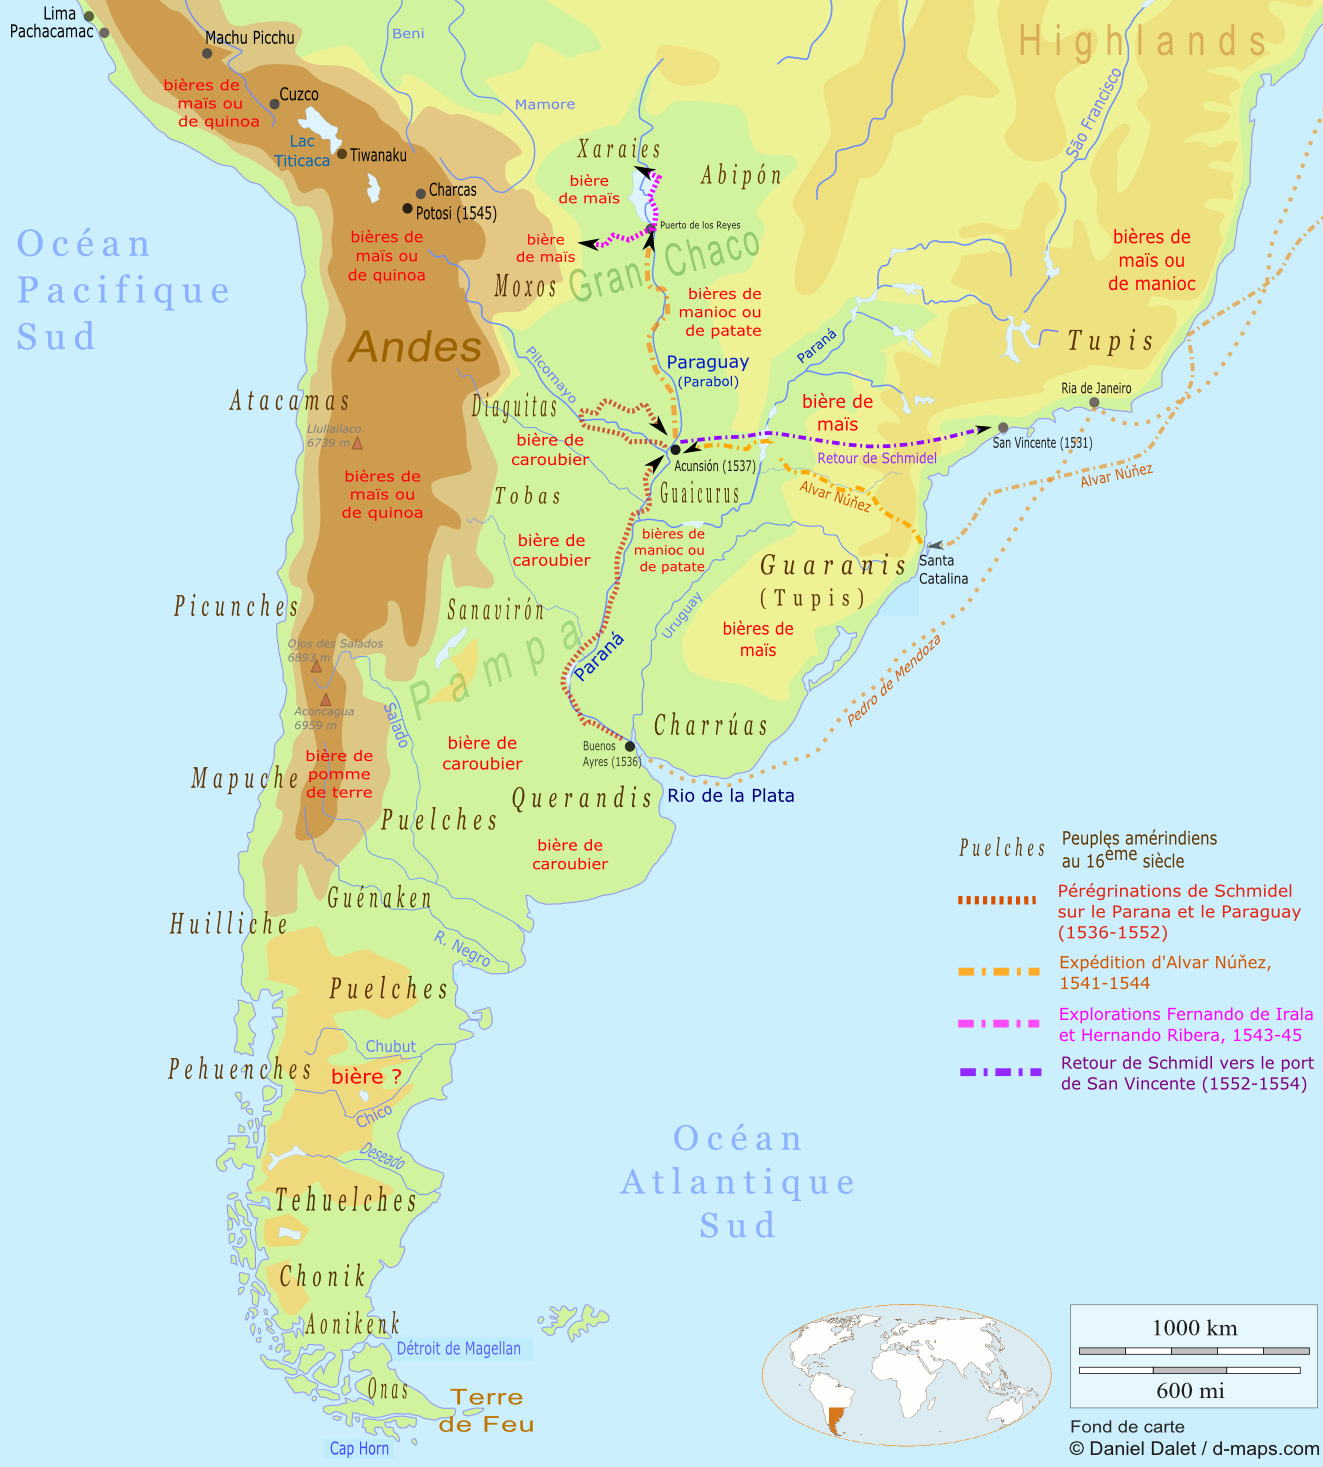 Carte Rio de la Plata 16ème siècle. Peuples amérindiens et sortes de bière